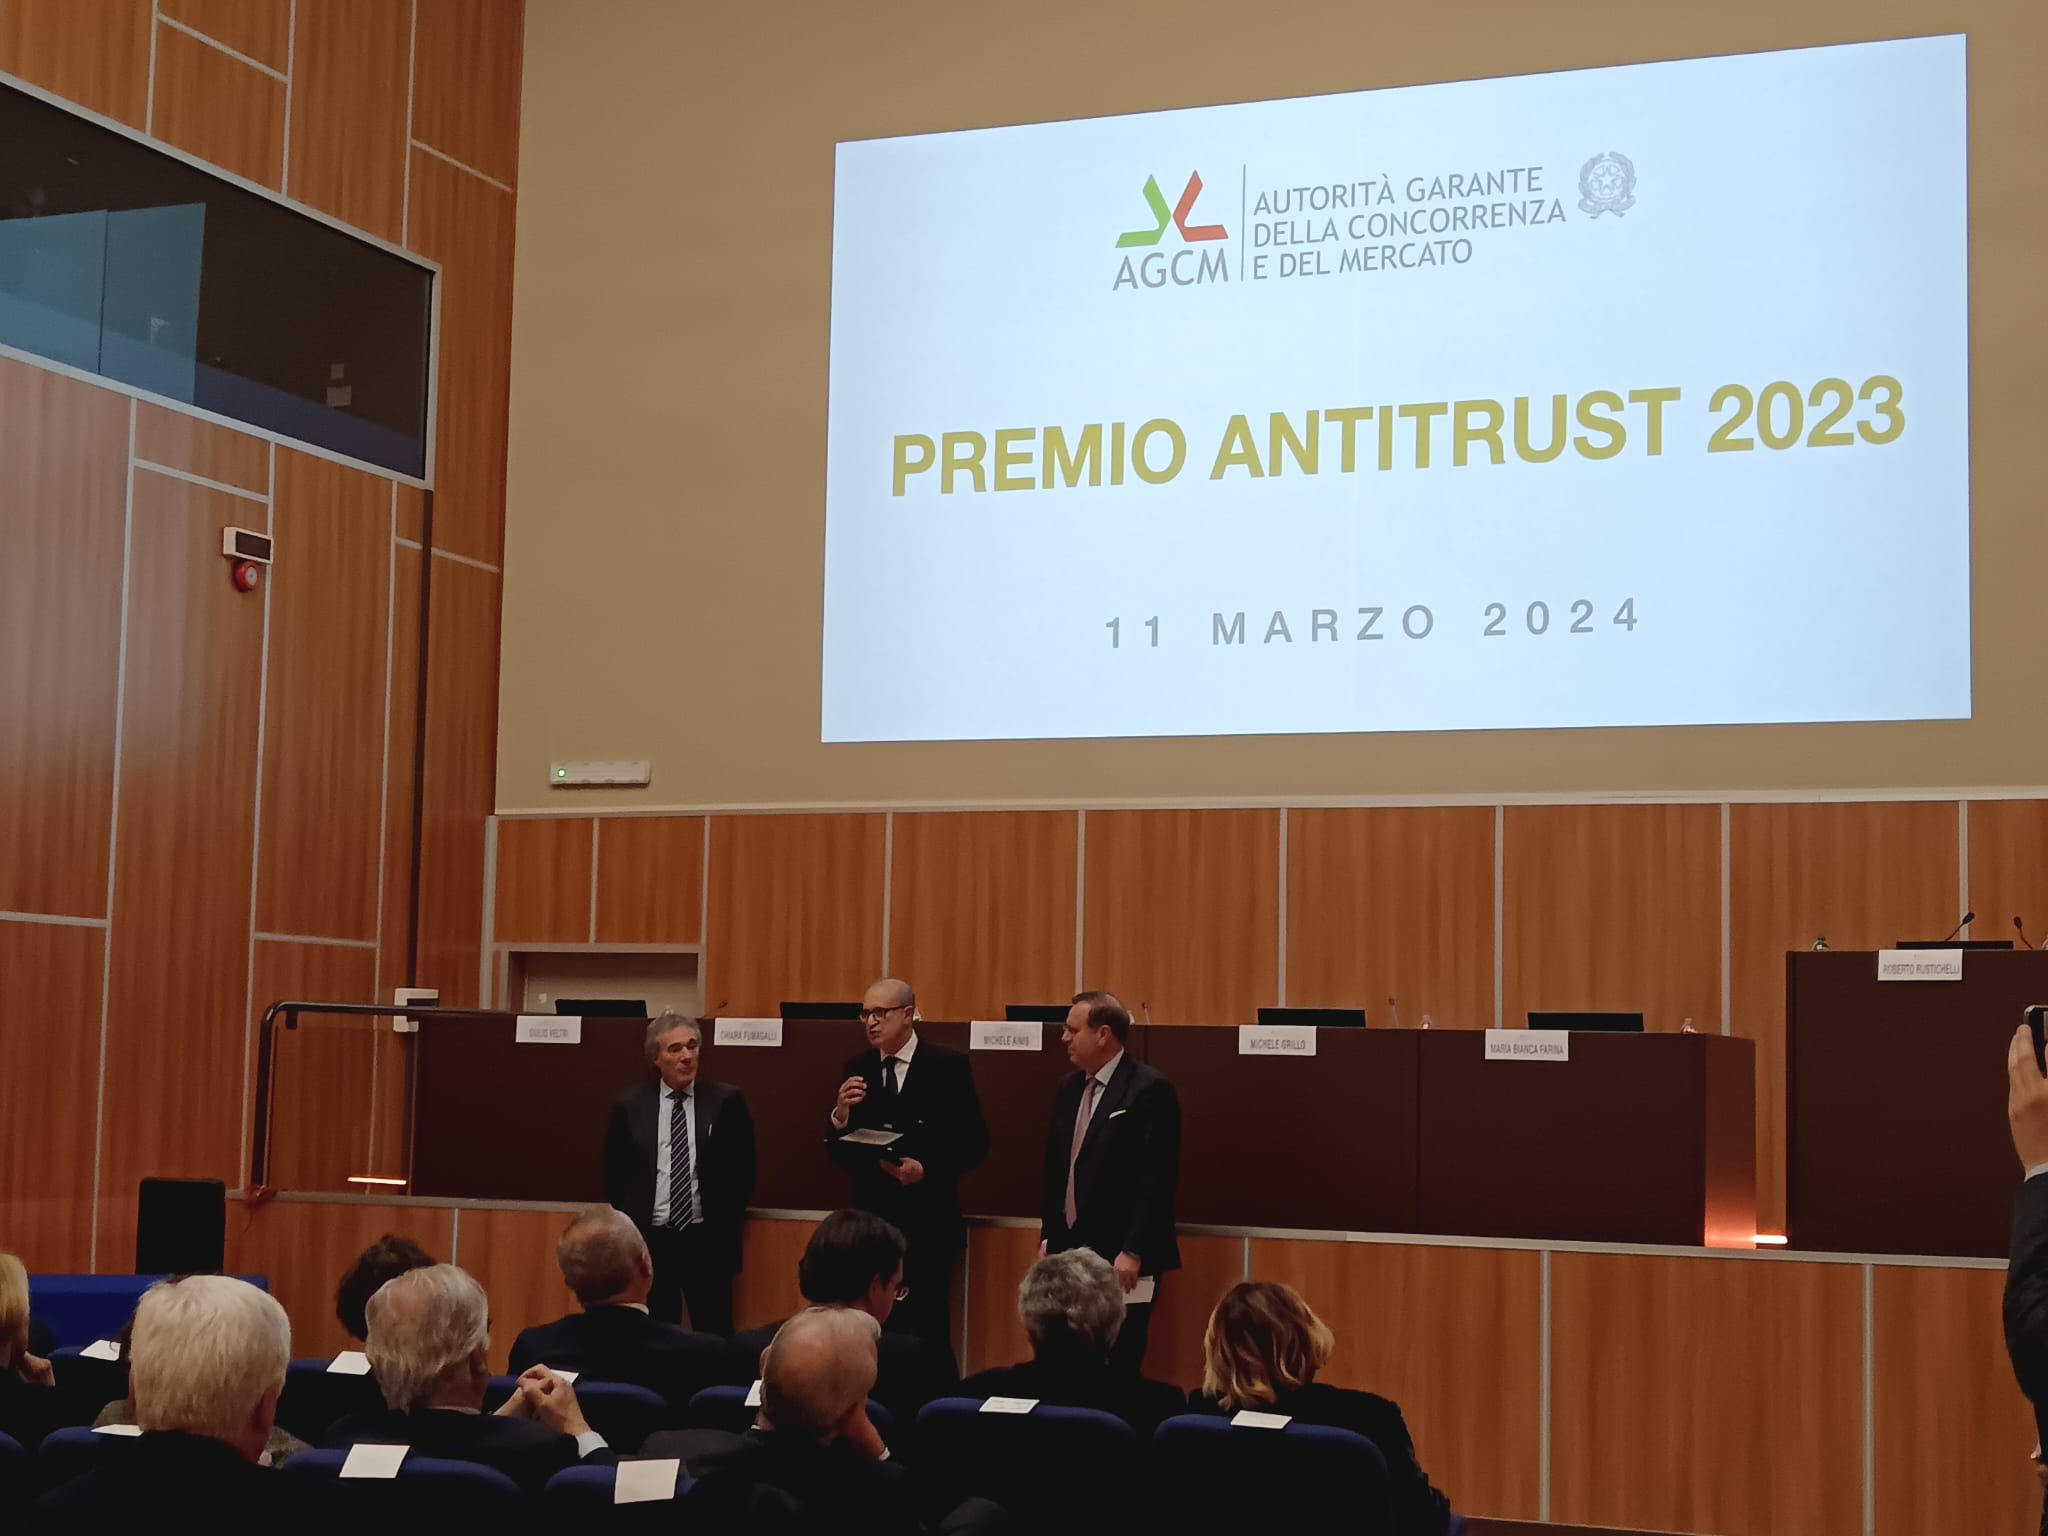 Il Premio Antitrust 2023 al progetto Acquisti sicuri on line di Casa del Consumatore